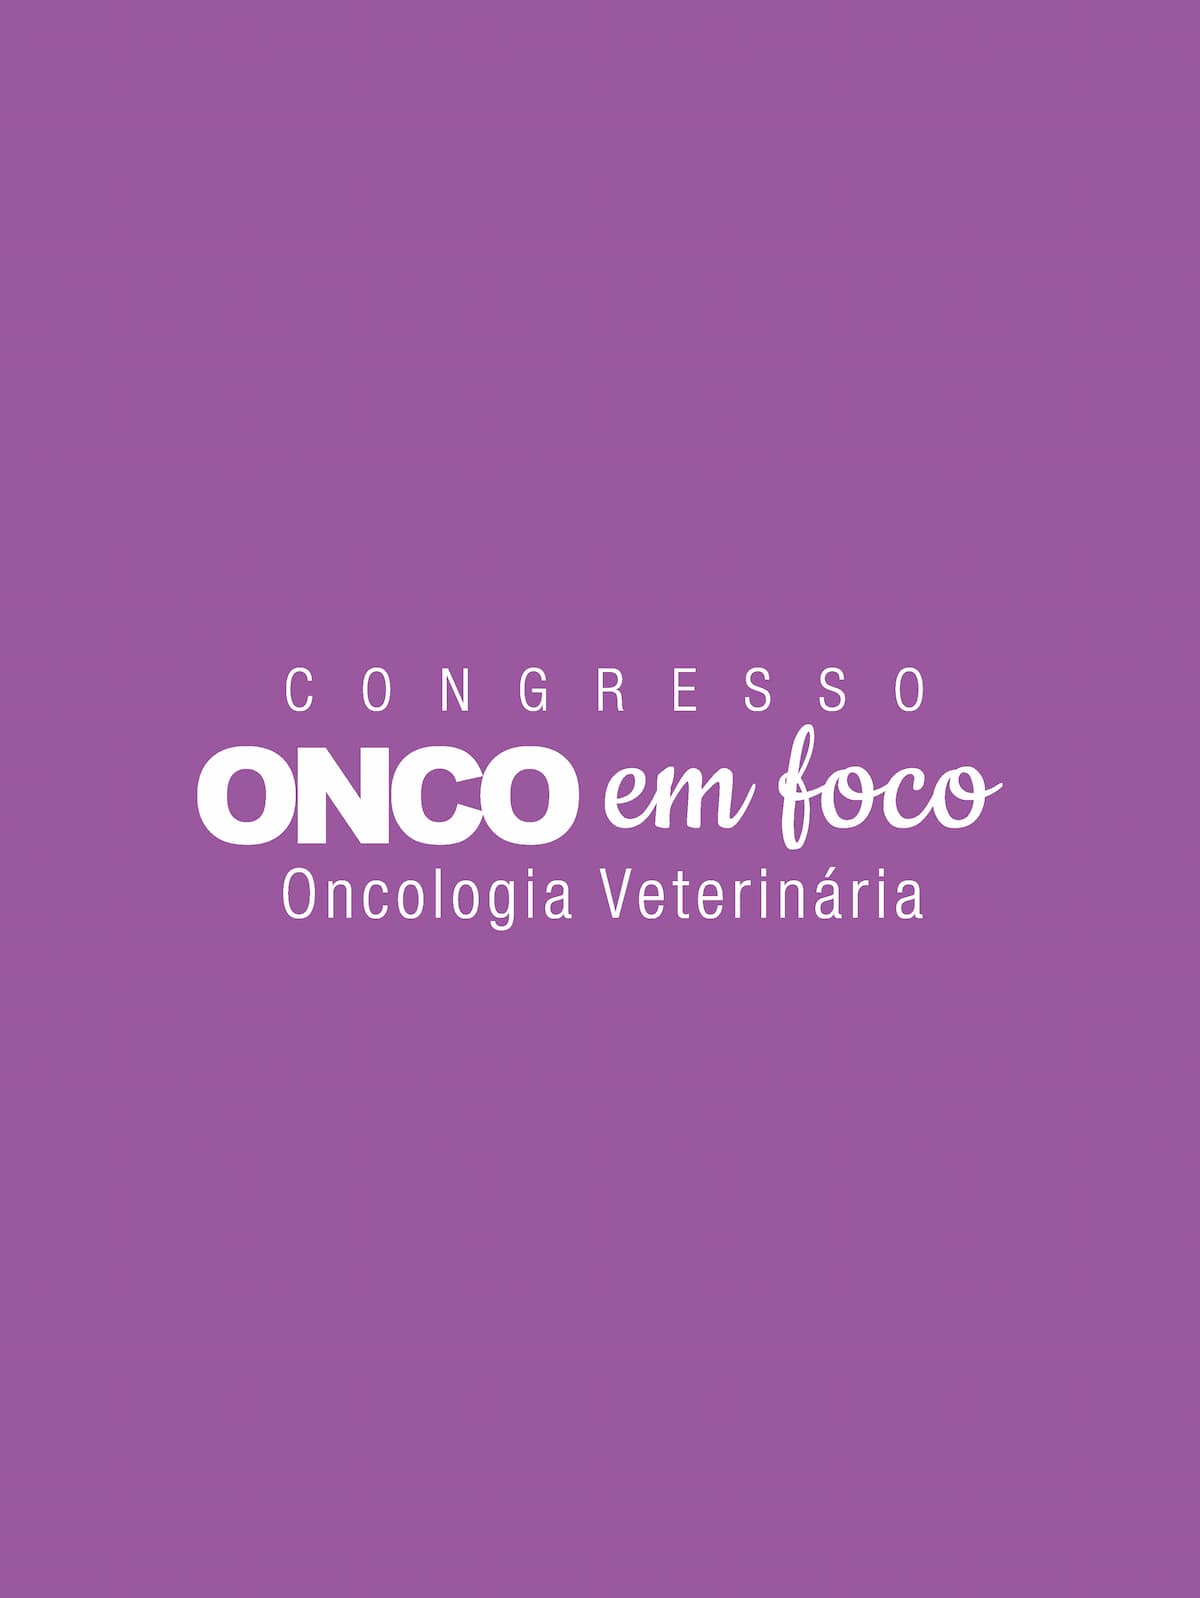 Congresso Onco em Foco Veterinários